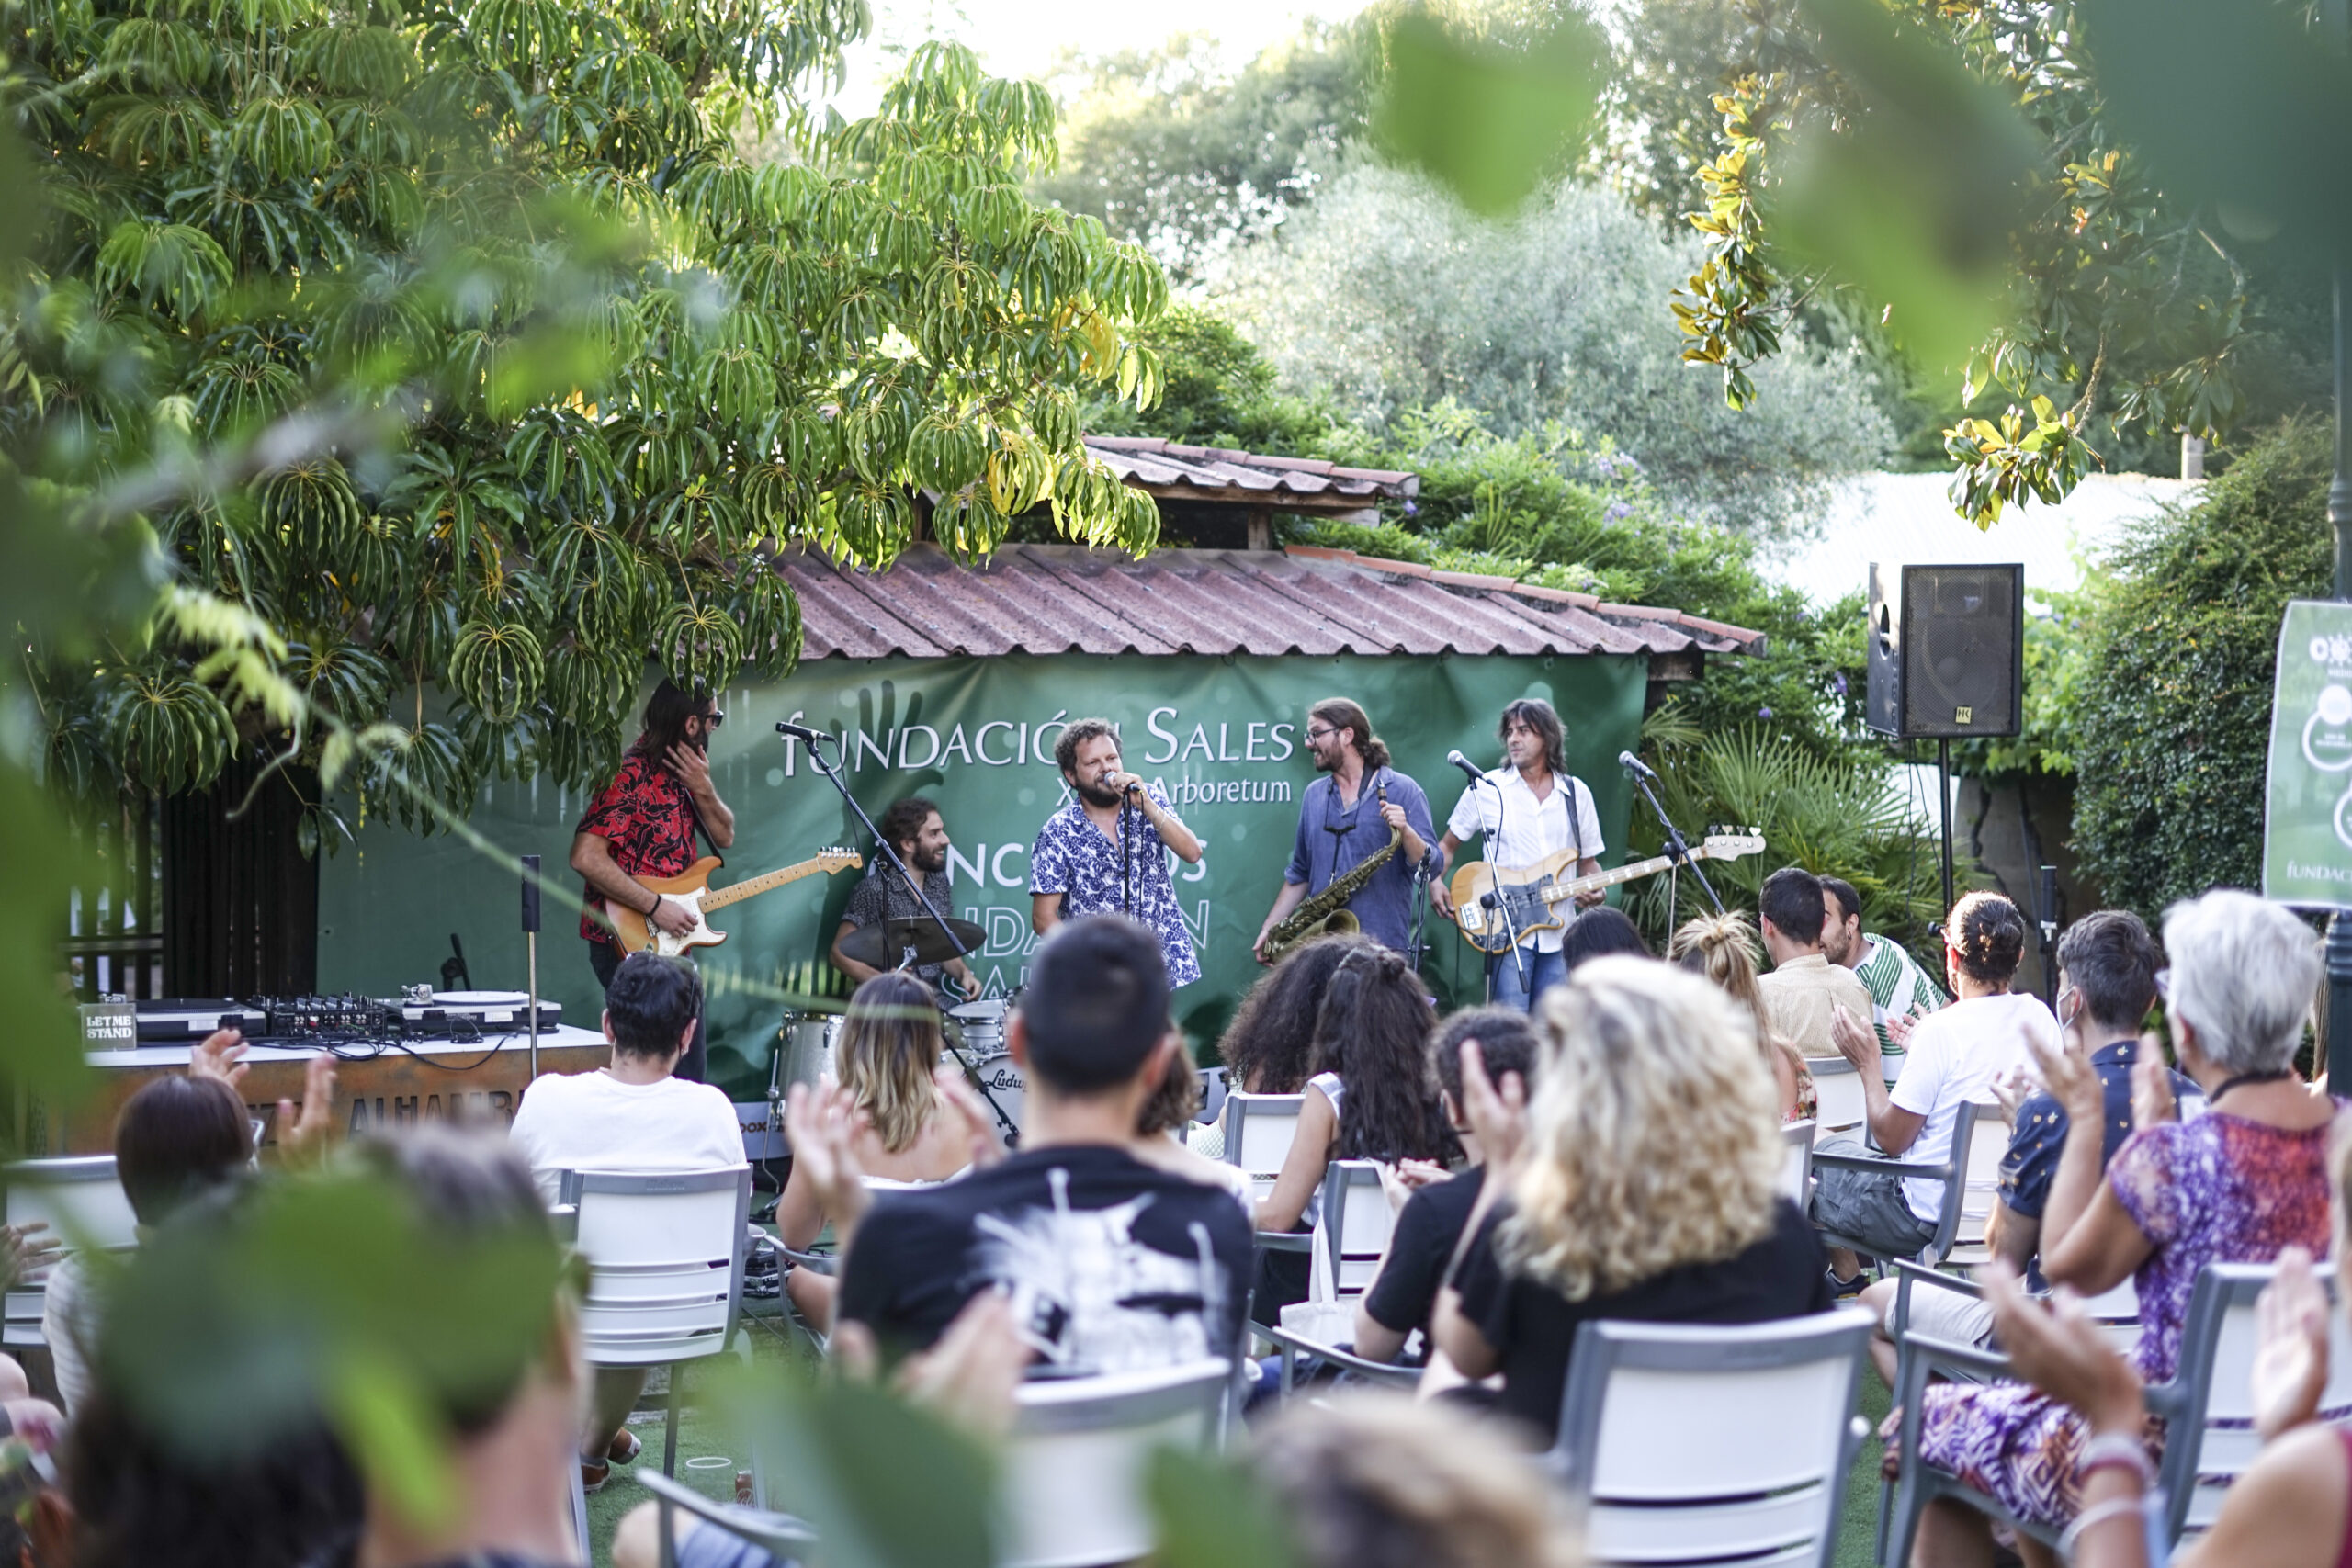 El jardín de la Fundación Sales acoge un ciclo de conciertos este verano